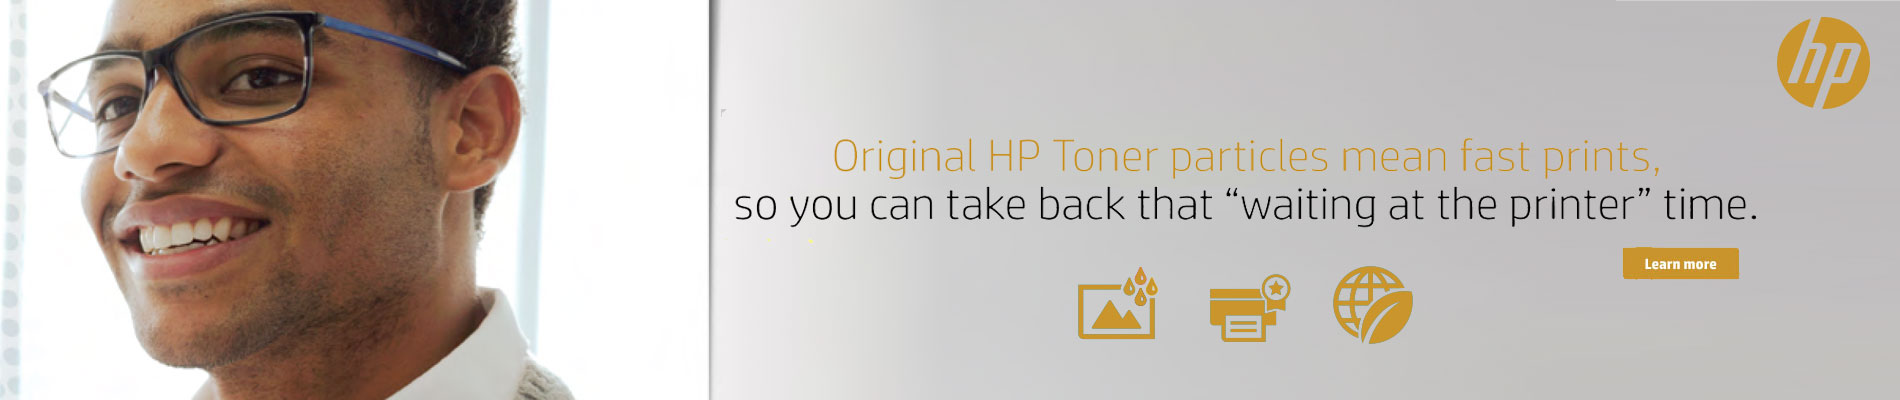 Original HP Toner Particles